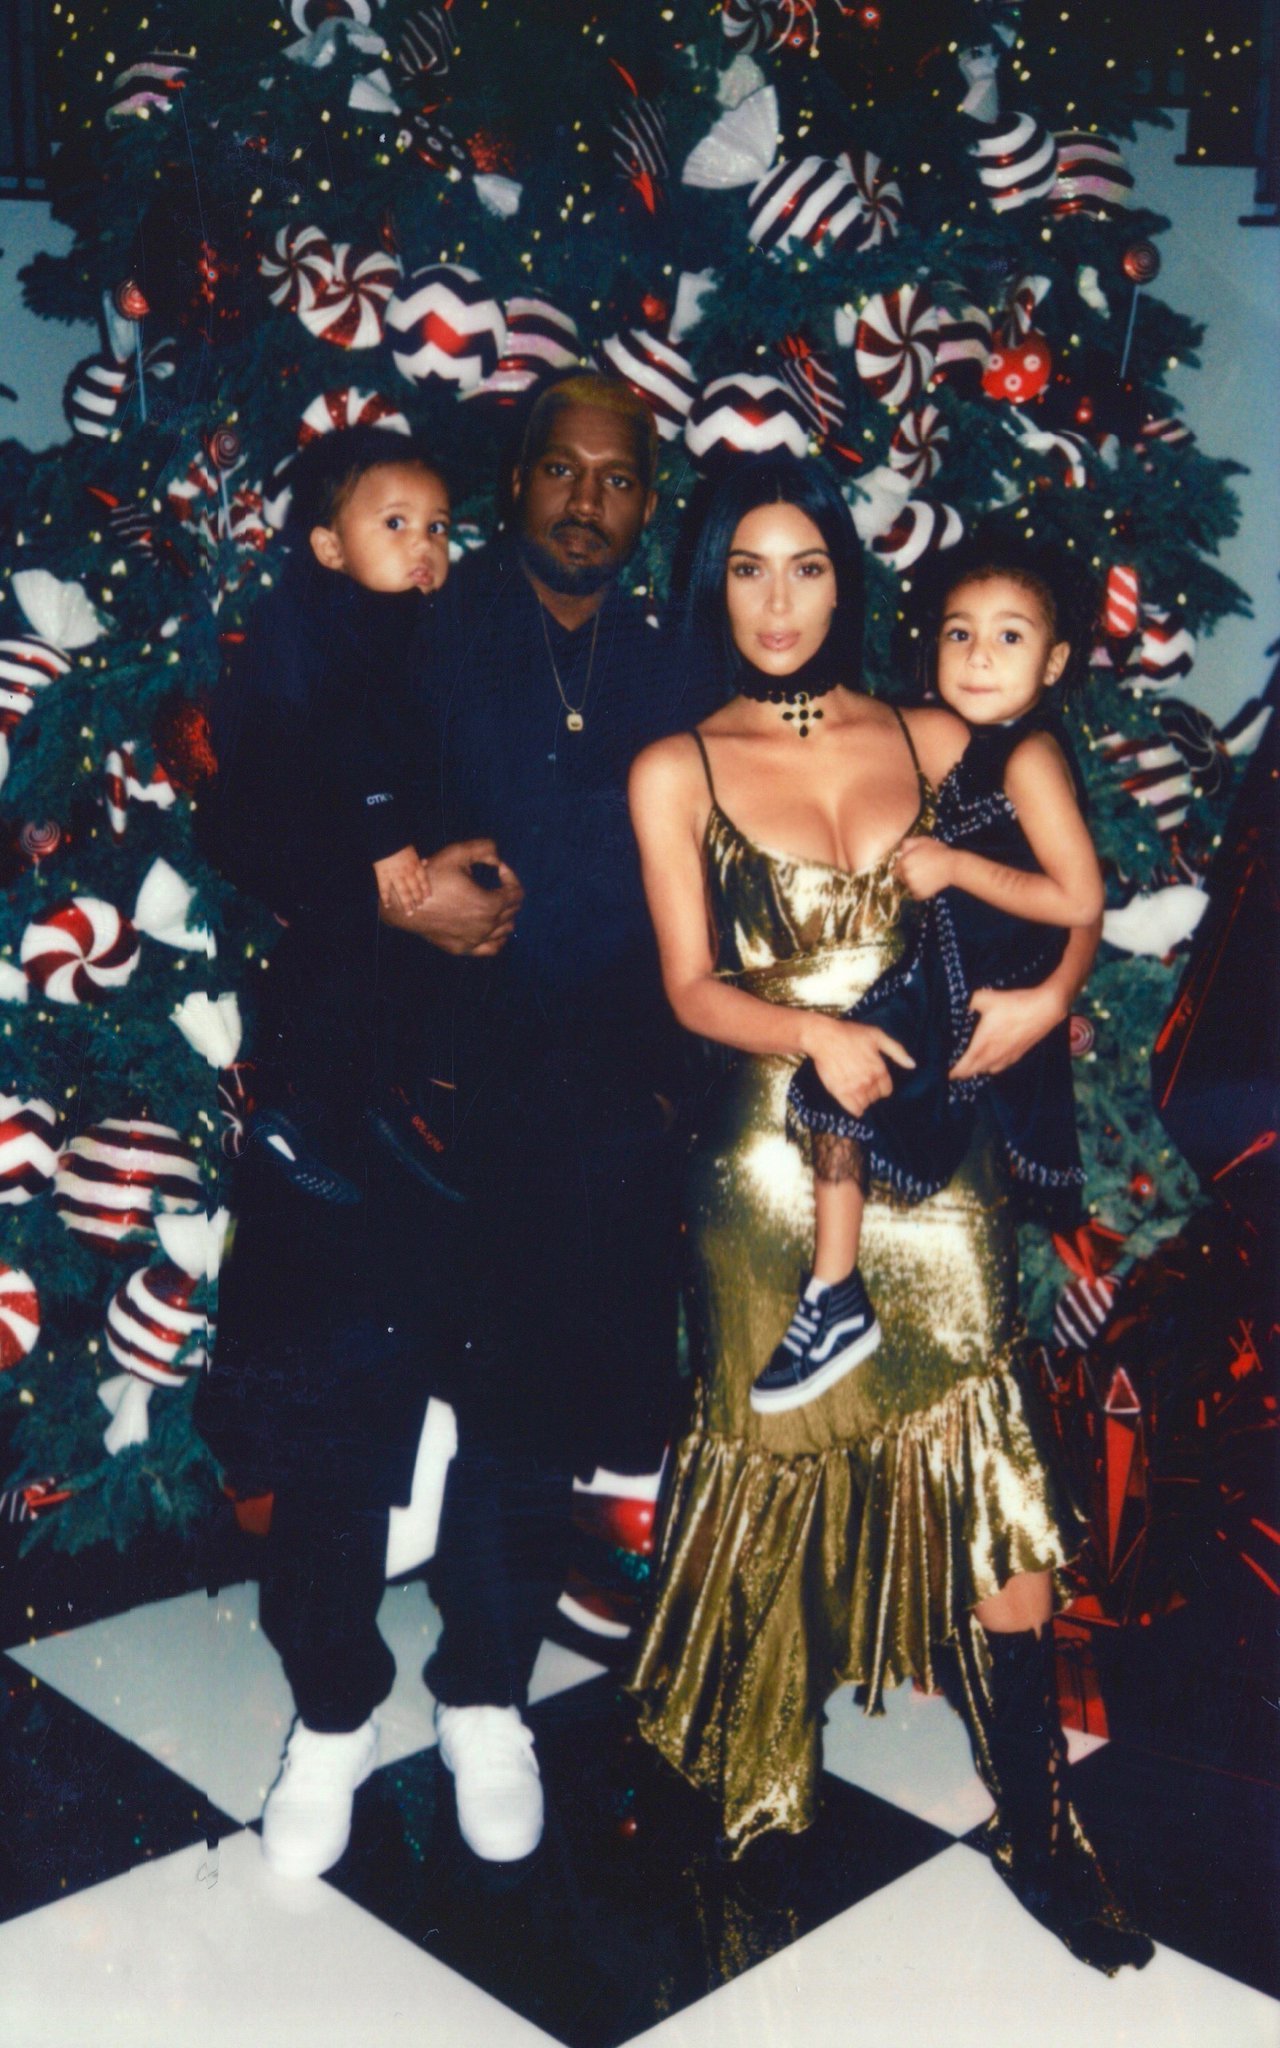 Kanye West a făcut publică această imagine, dorind să demonstreze că e fericit alături de Kim Kardashian şi nu vor divorţa